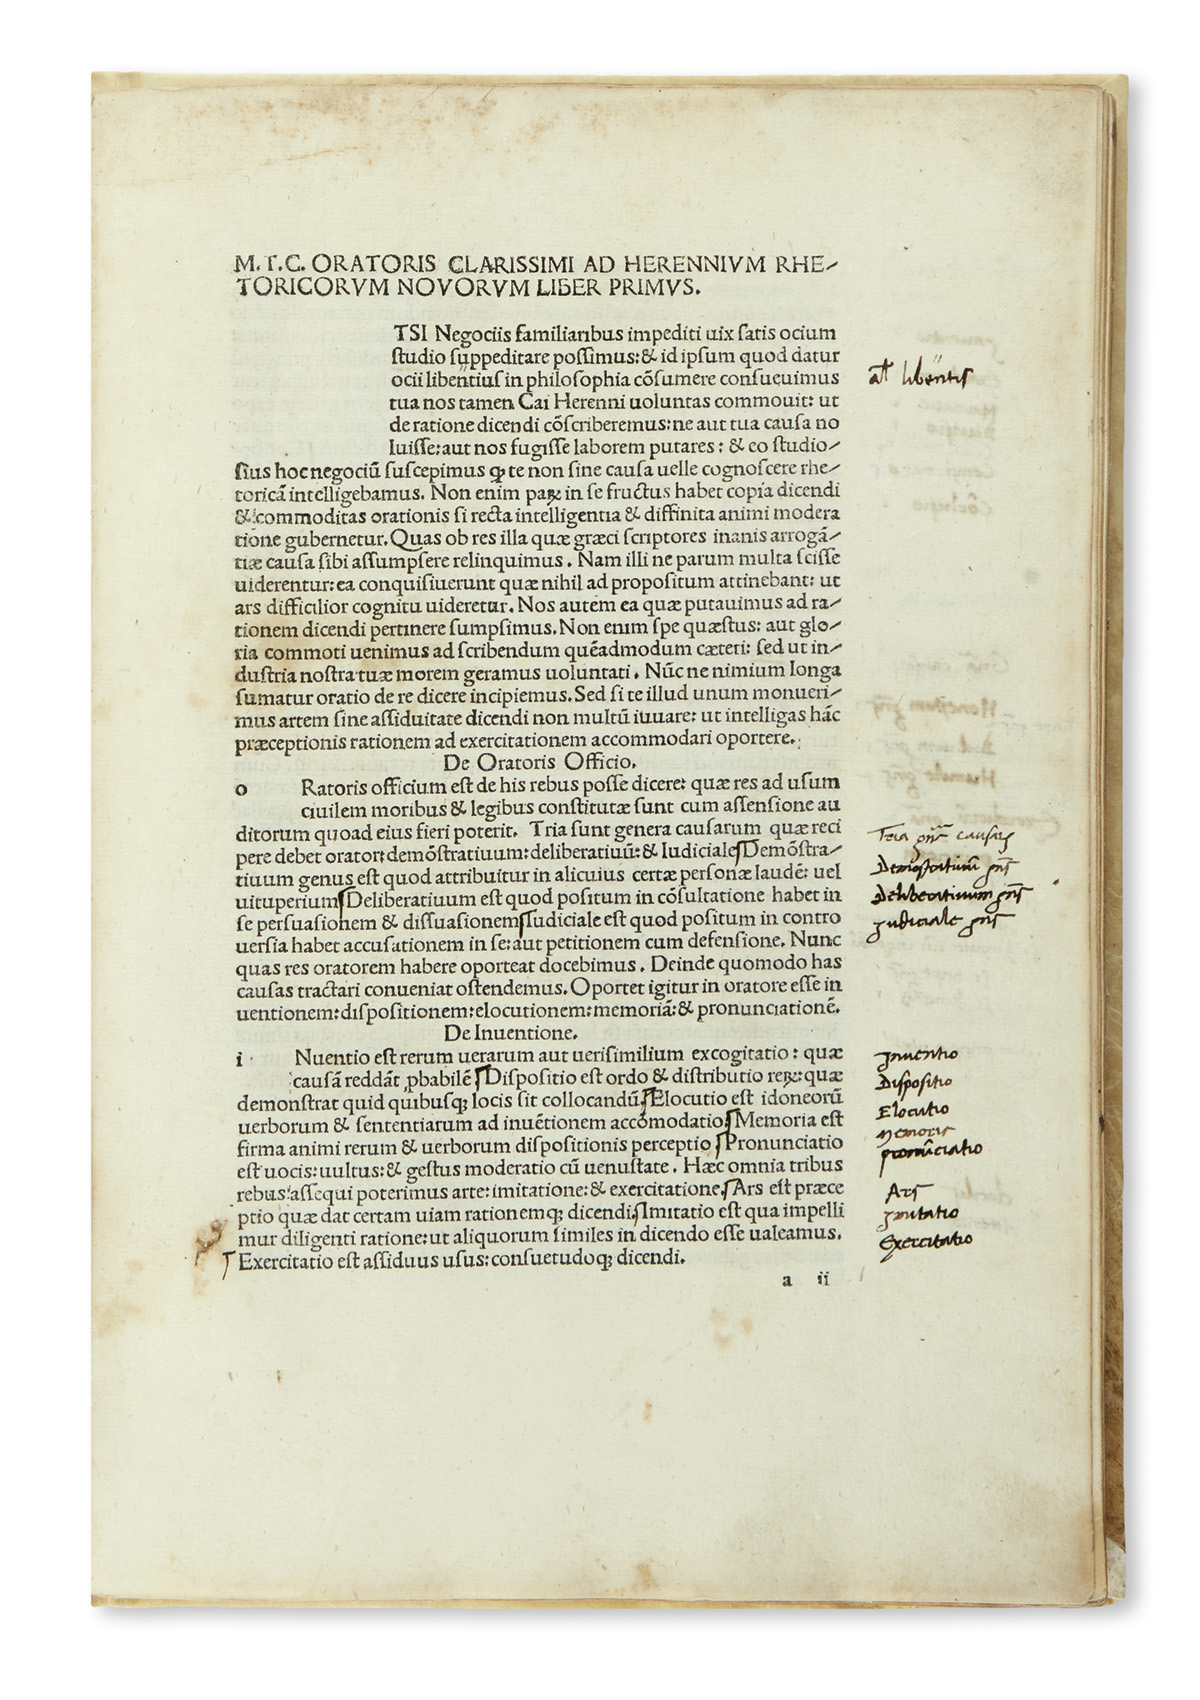 INCUNABULA  CICERO, MARCUS TULLIUS. Rhetorica ad C. Herennium.  1476